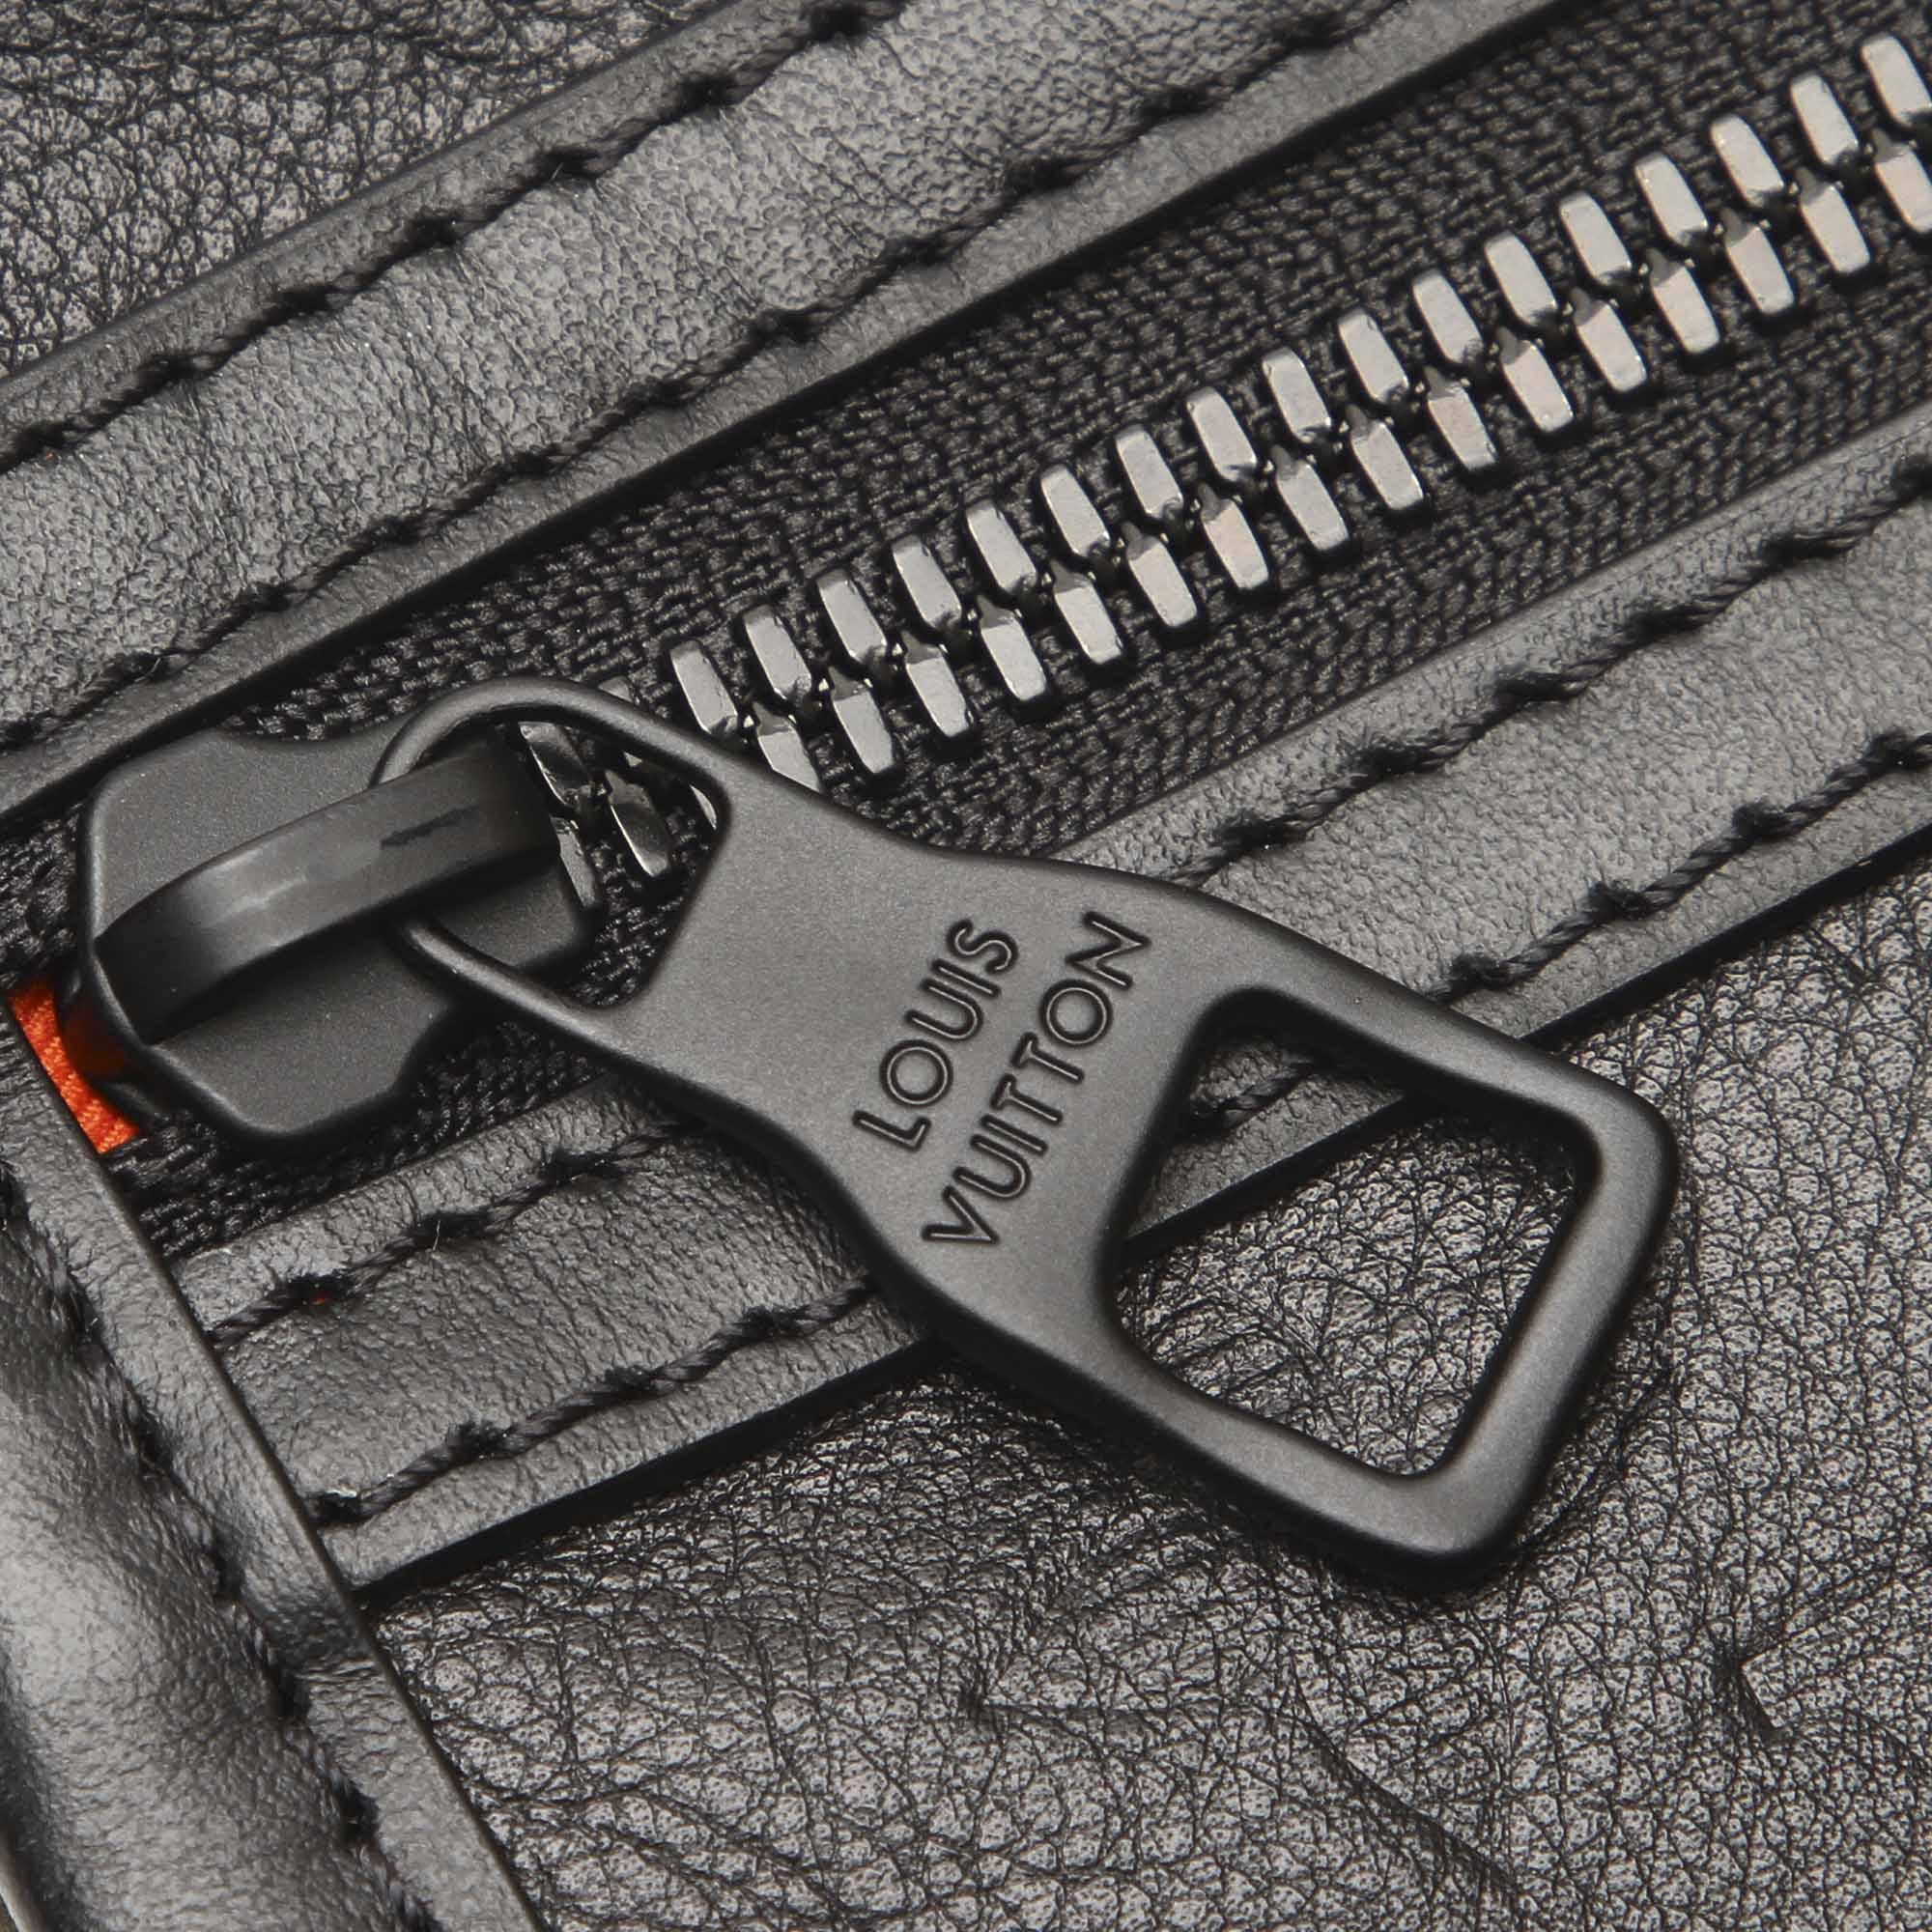 Louis Vuitton Leather Black Monogram Shadow Double Flat Messenger Bag - Lyst